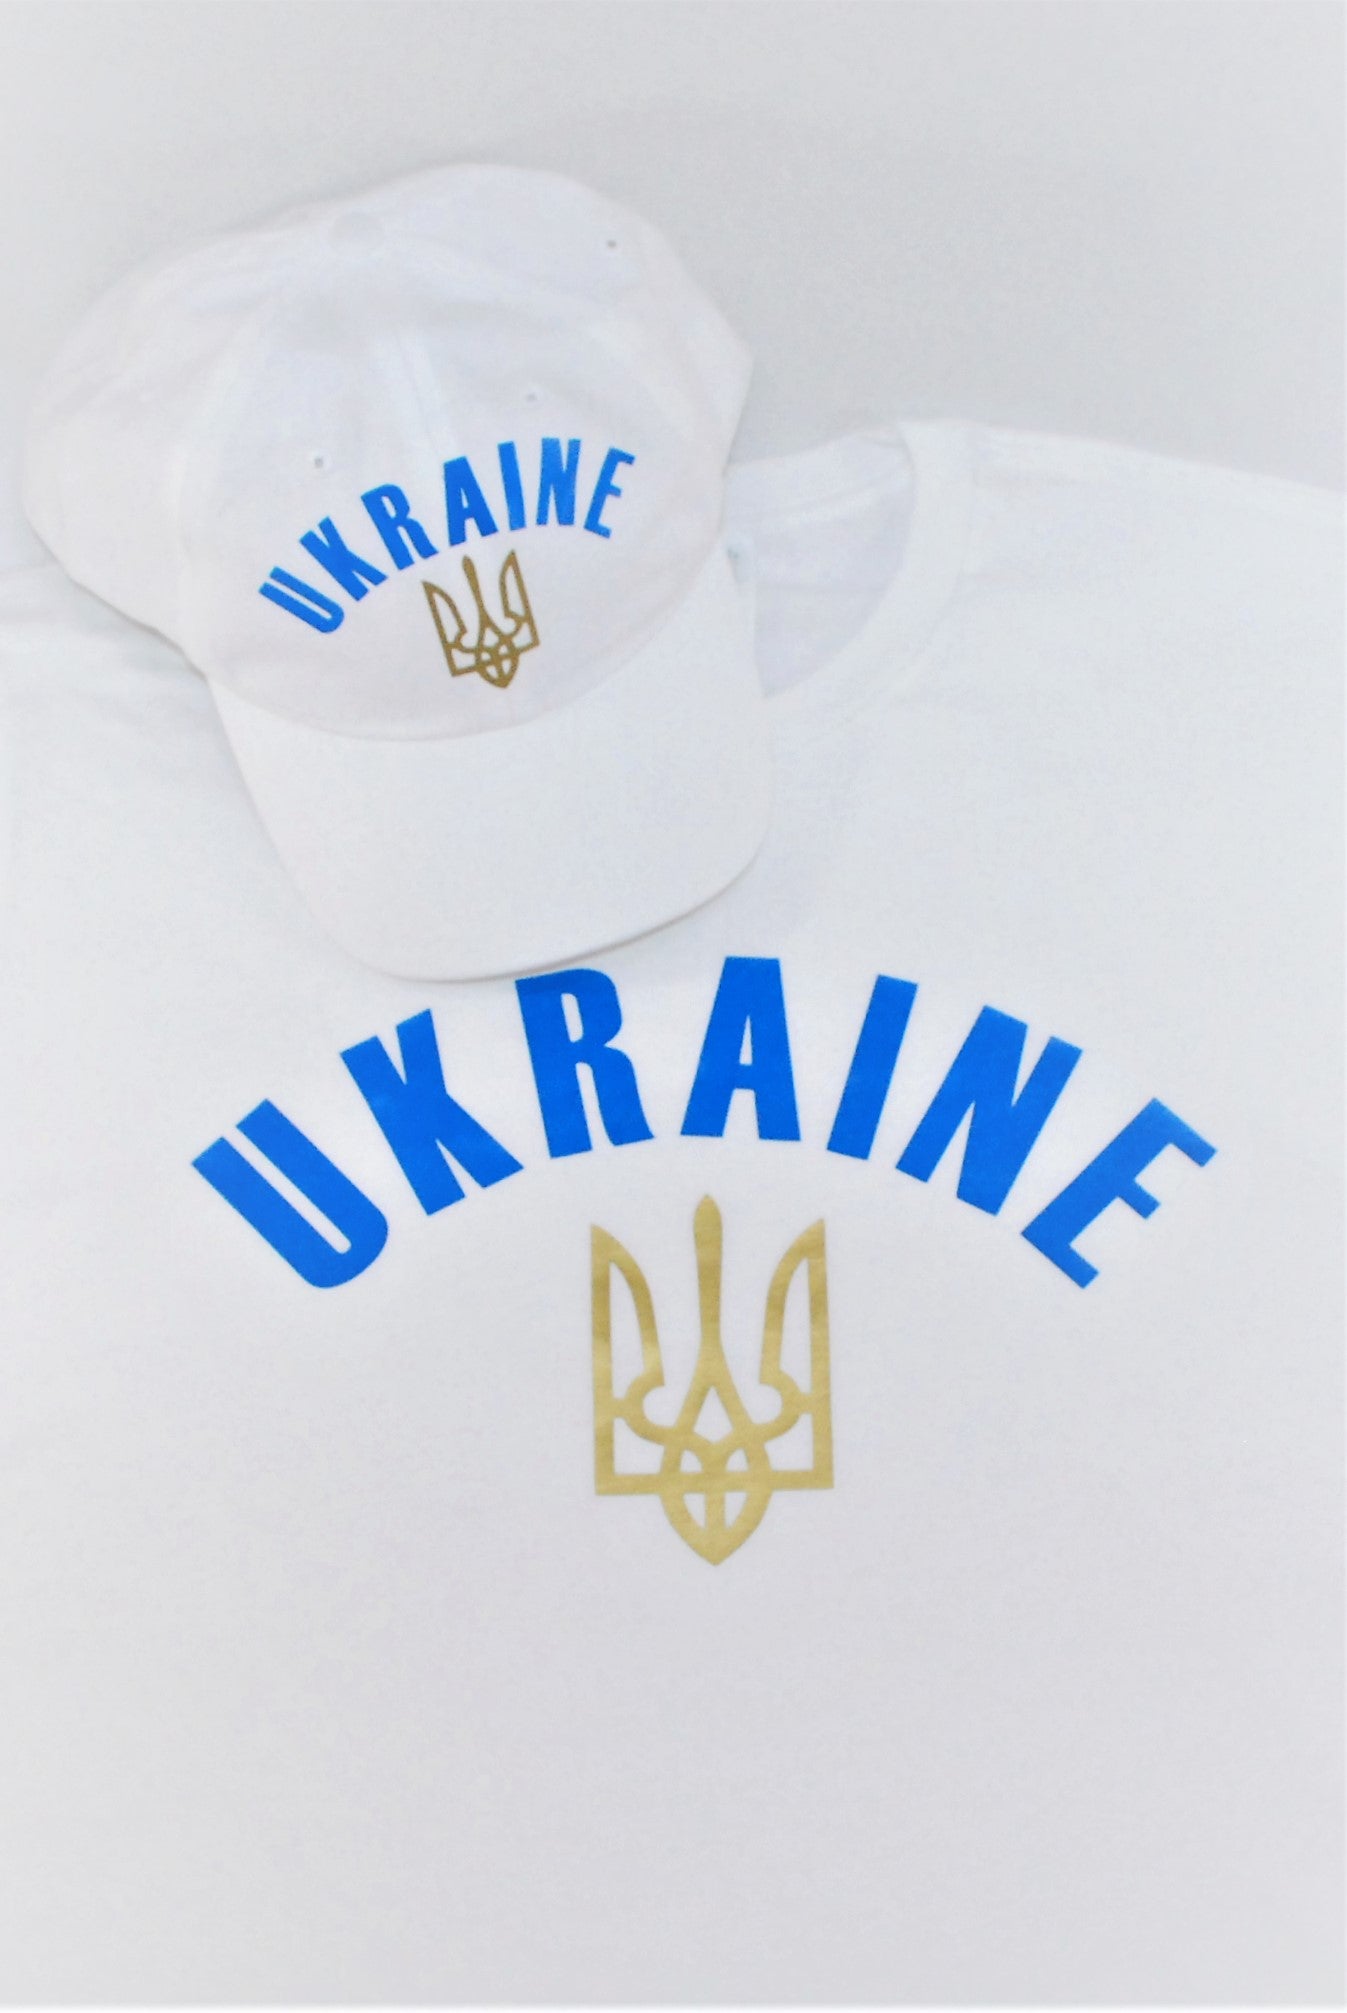 Women's t-shirt "Ukraine" white